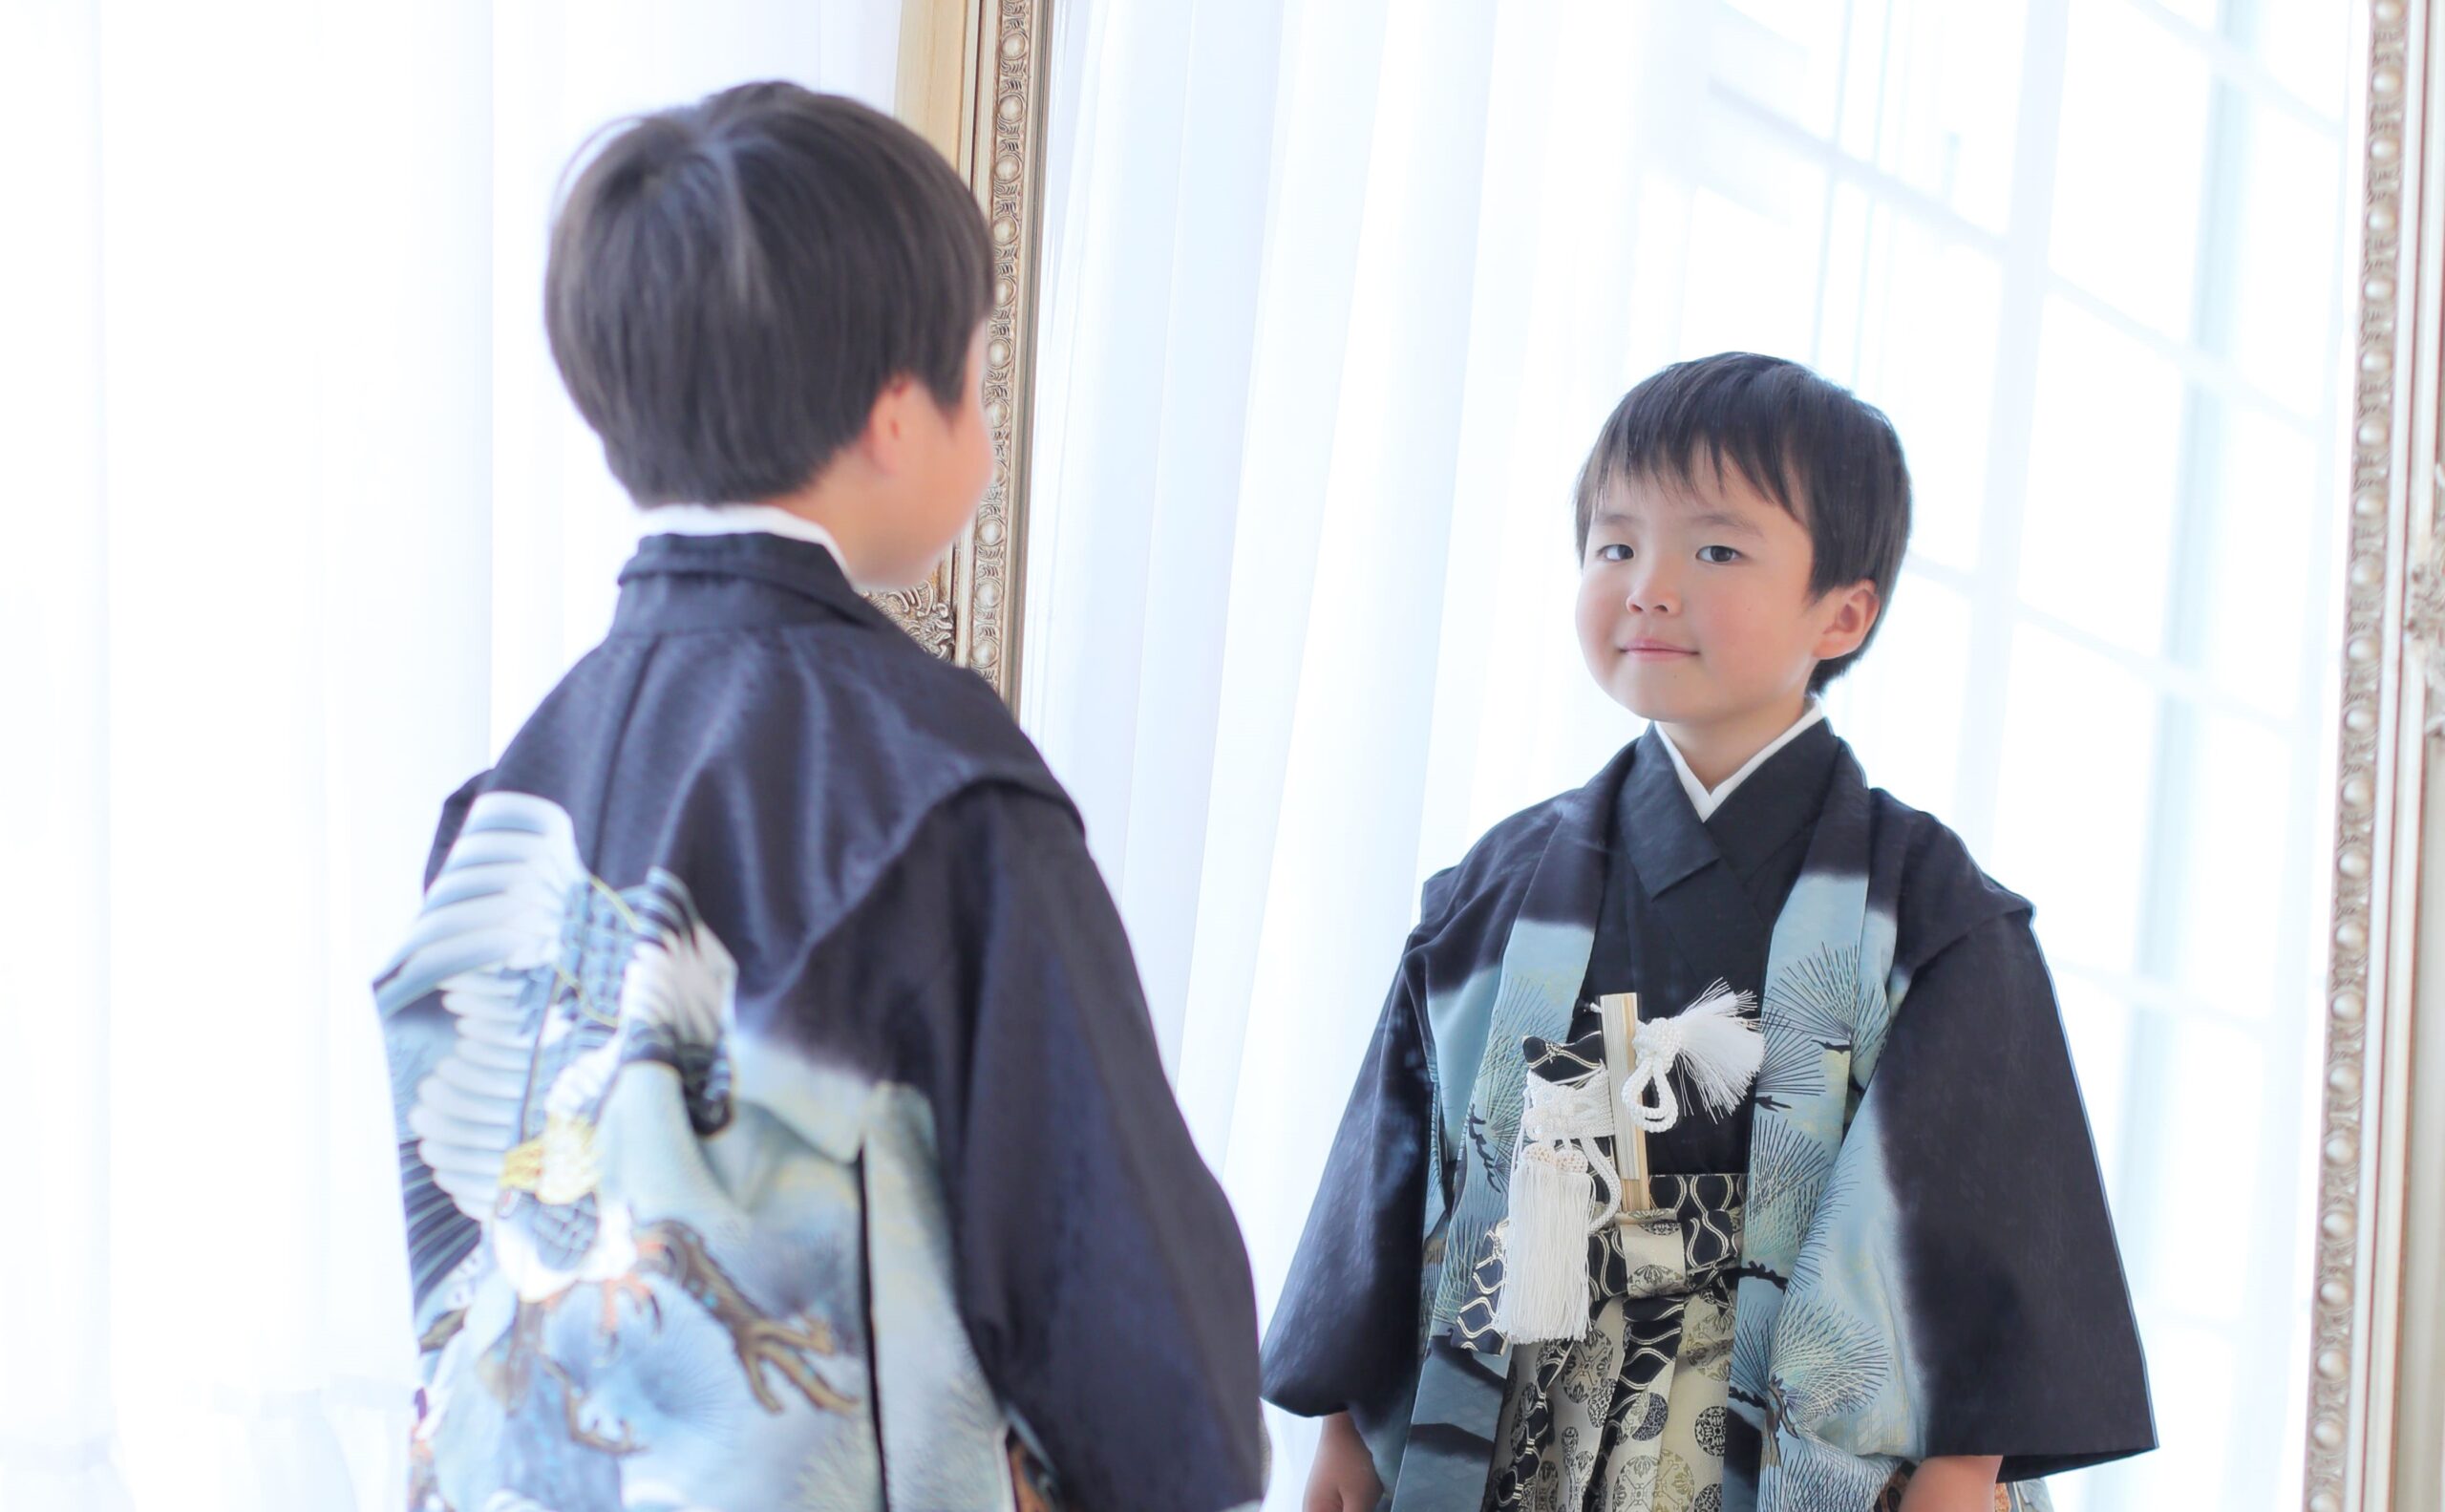 シックな色合いと伝統的な柄の組み合わせが魅力、紋付袴のおすすめスタイルをご紹介